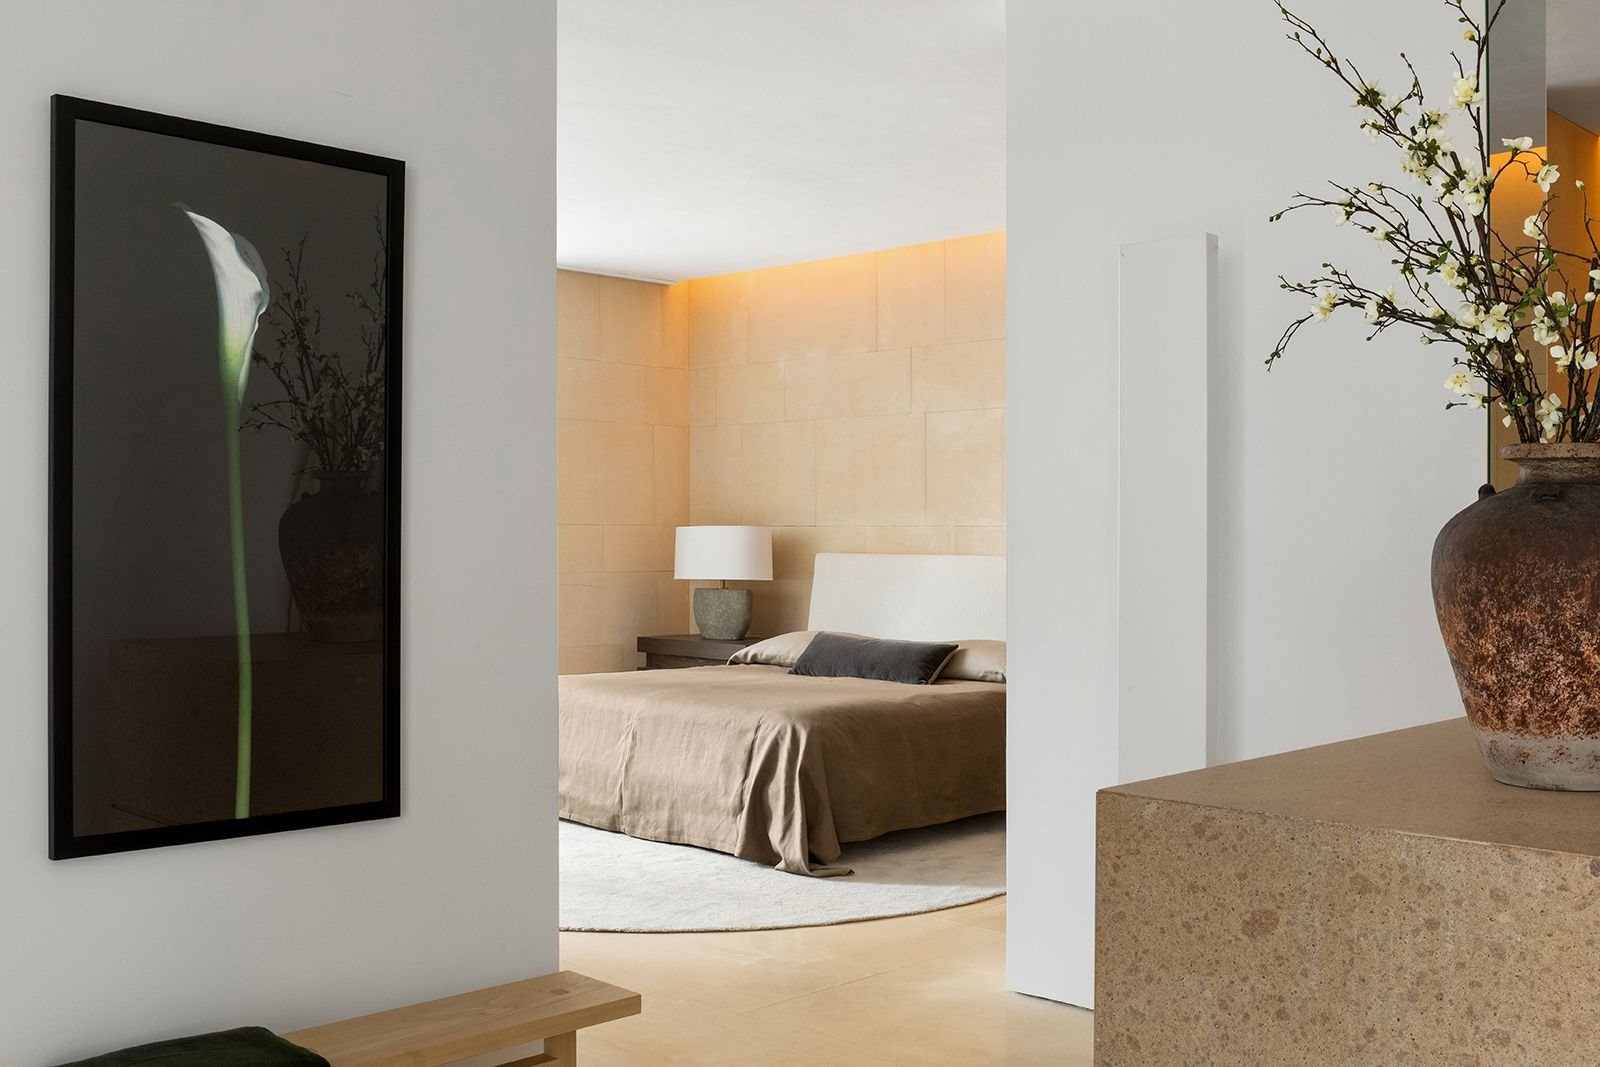 vista del dormitorio del loft de kanye west y kim kardashian diseñado por Claudio Silvestrin Architects.